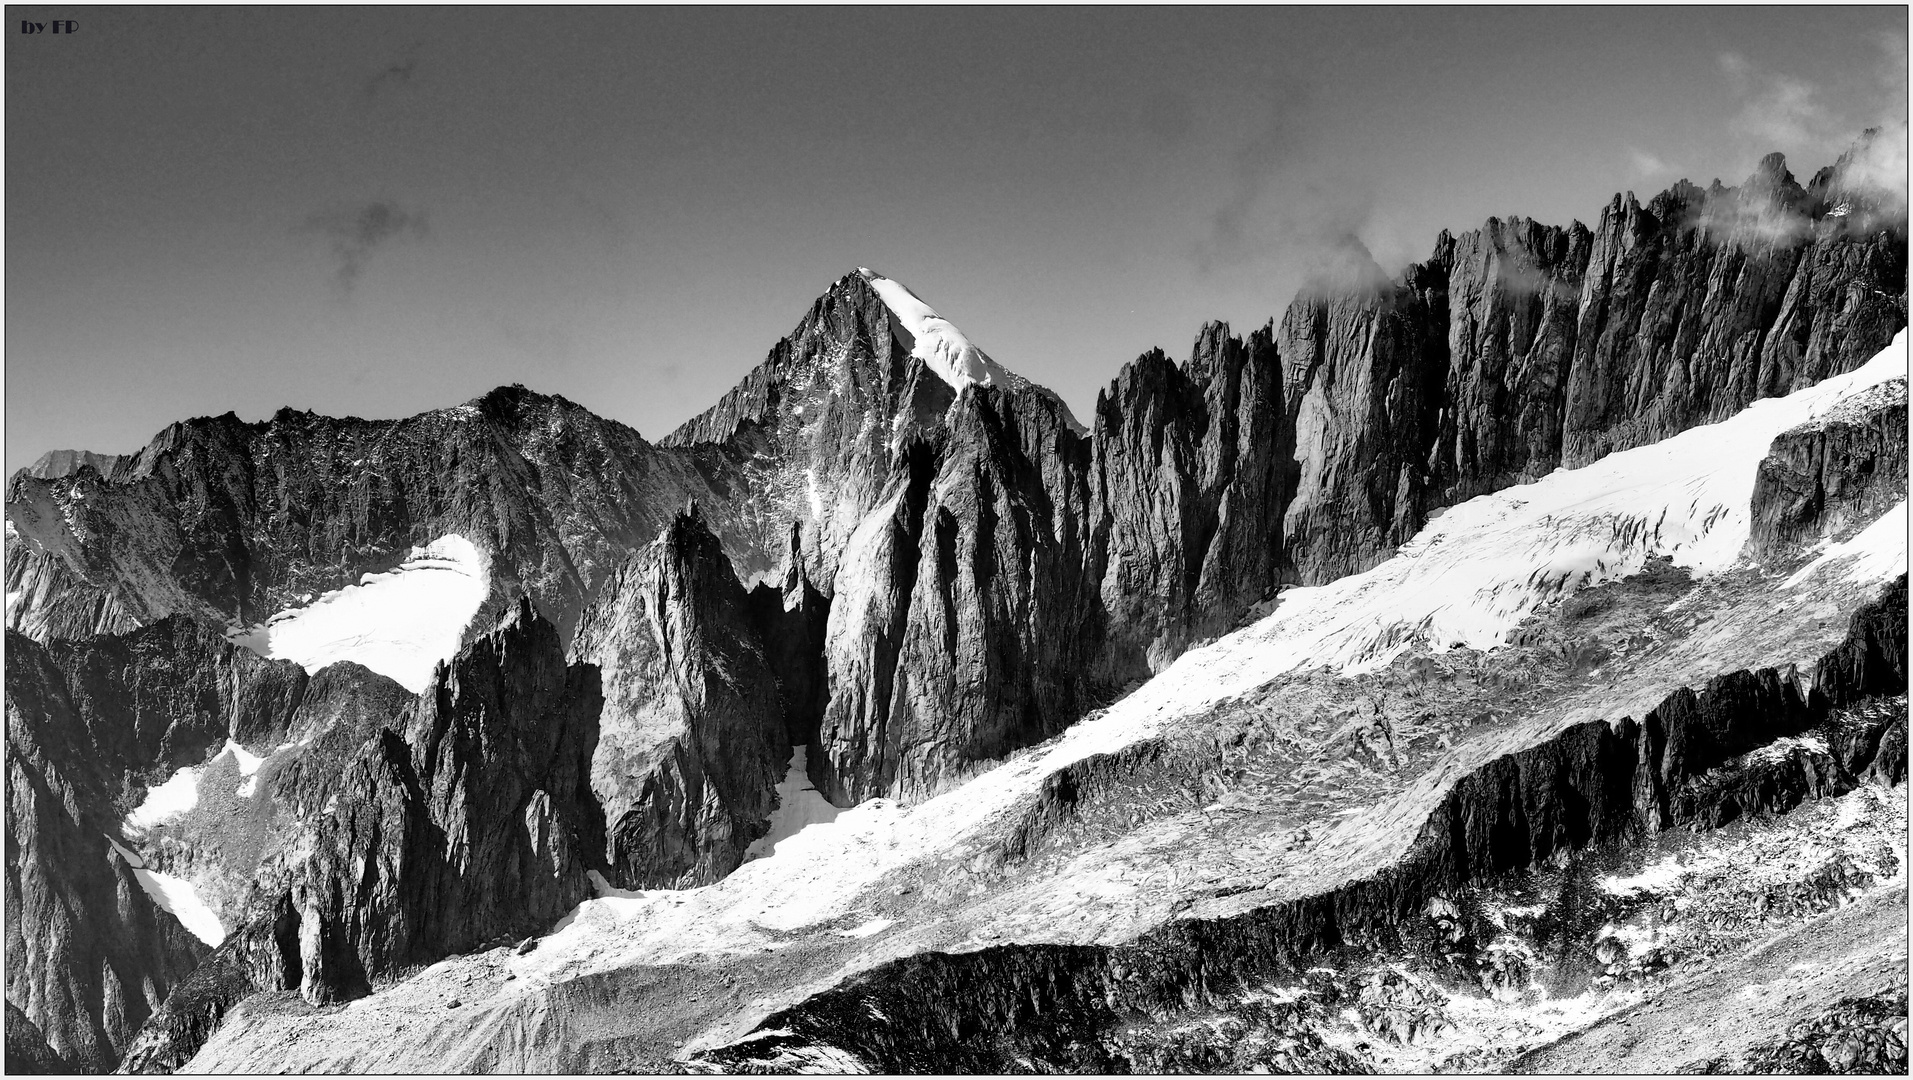 Walliser Gipfel in monochrome 